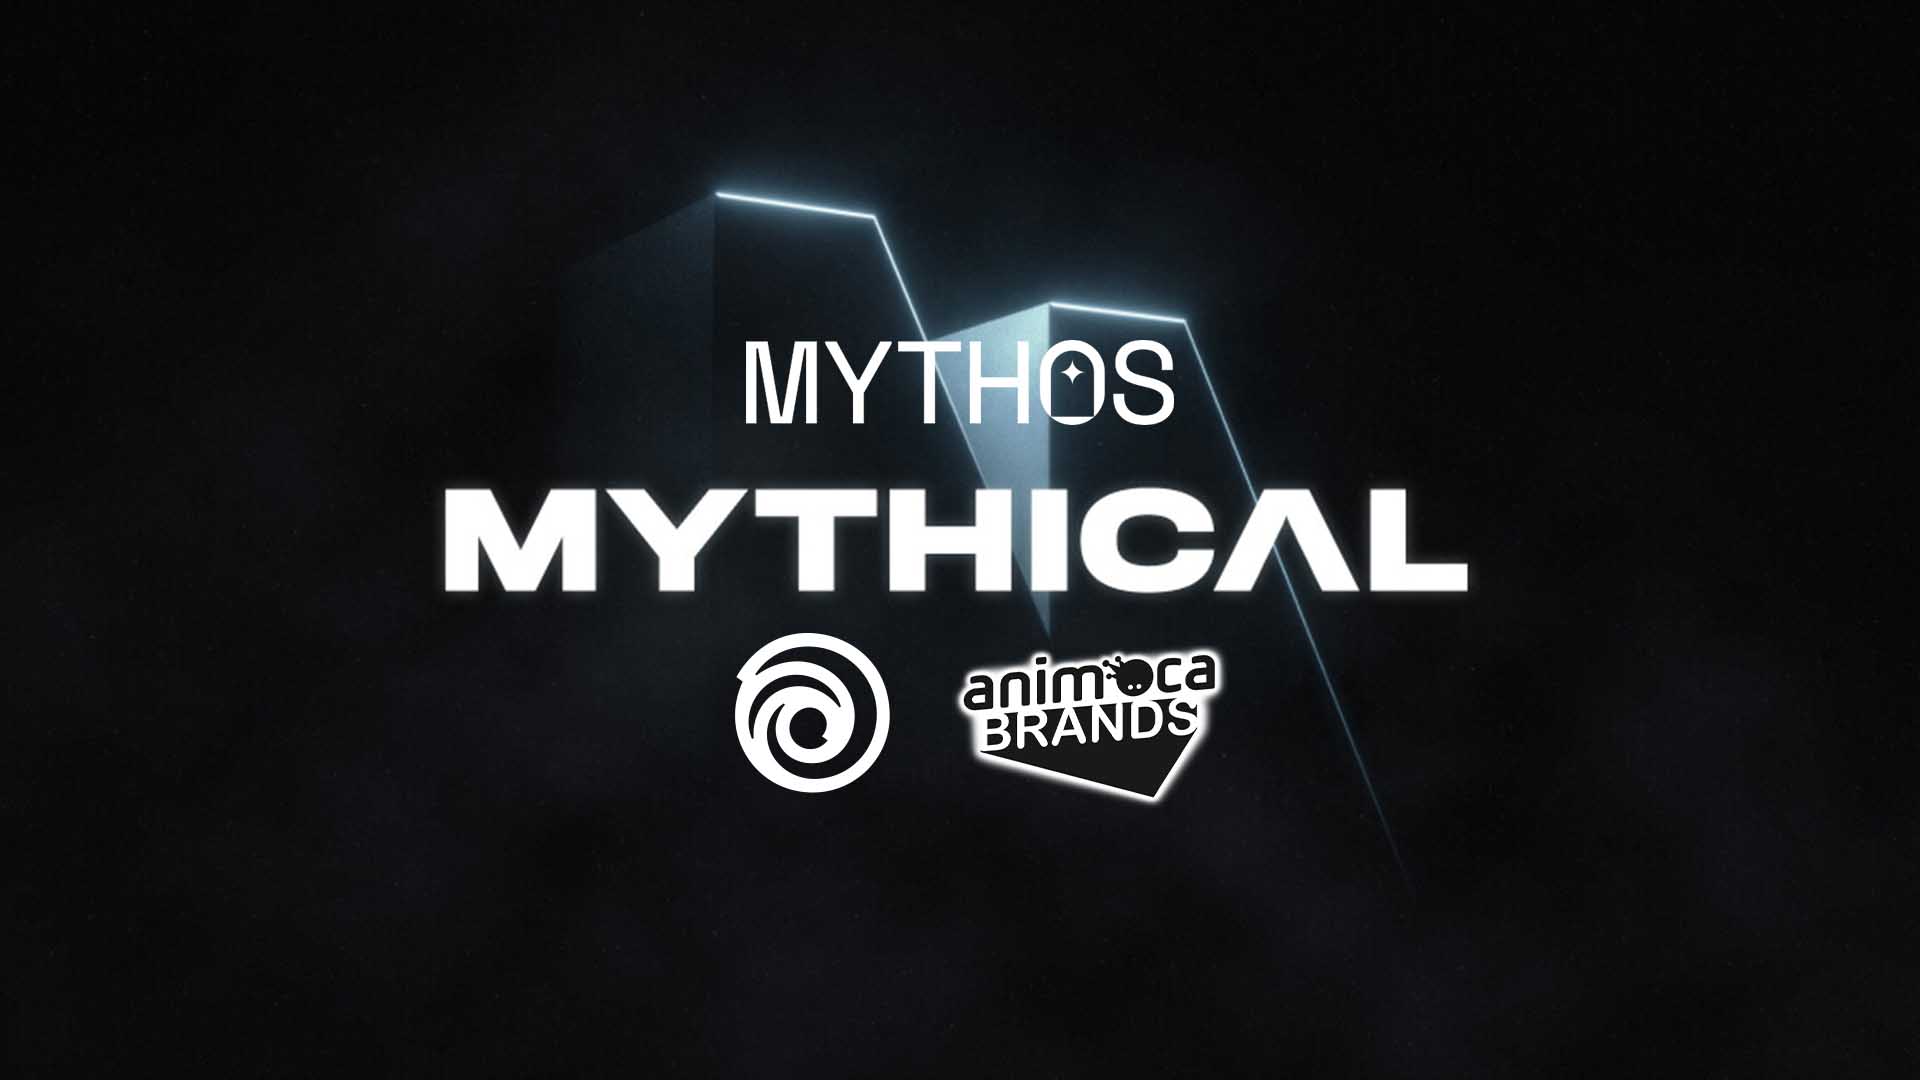 Mythos Mythical